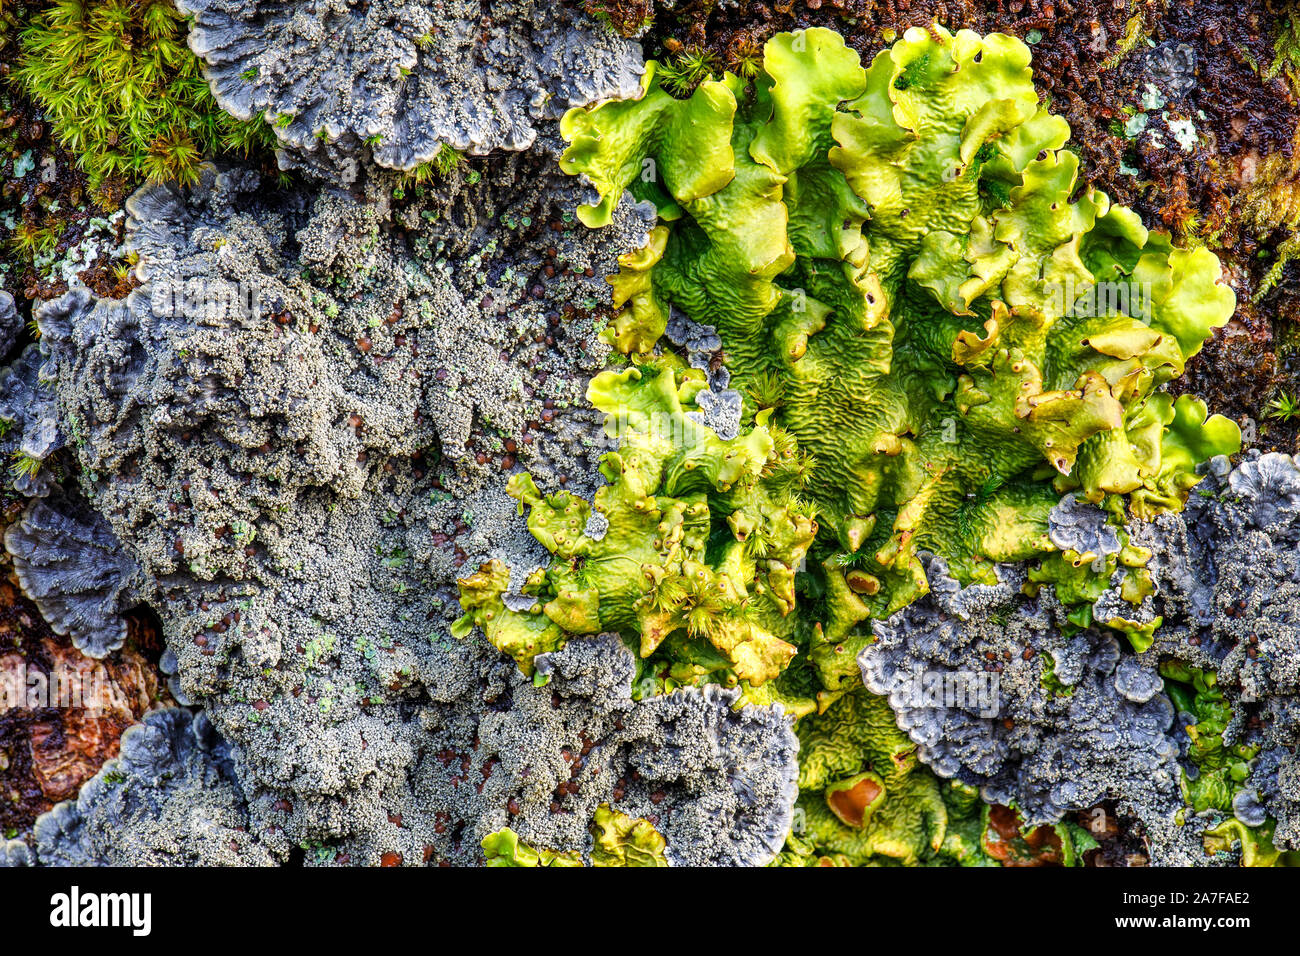 Lobarion lichen community Stock Photo